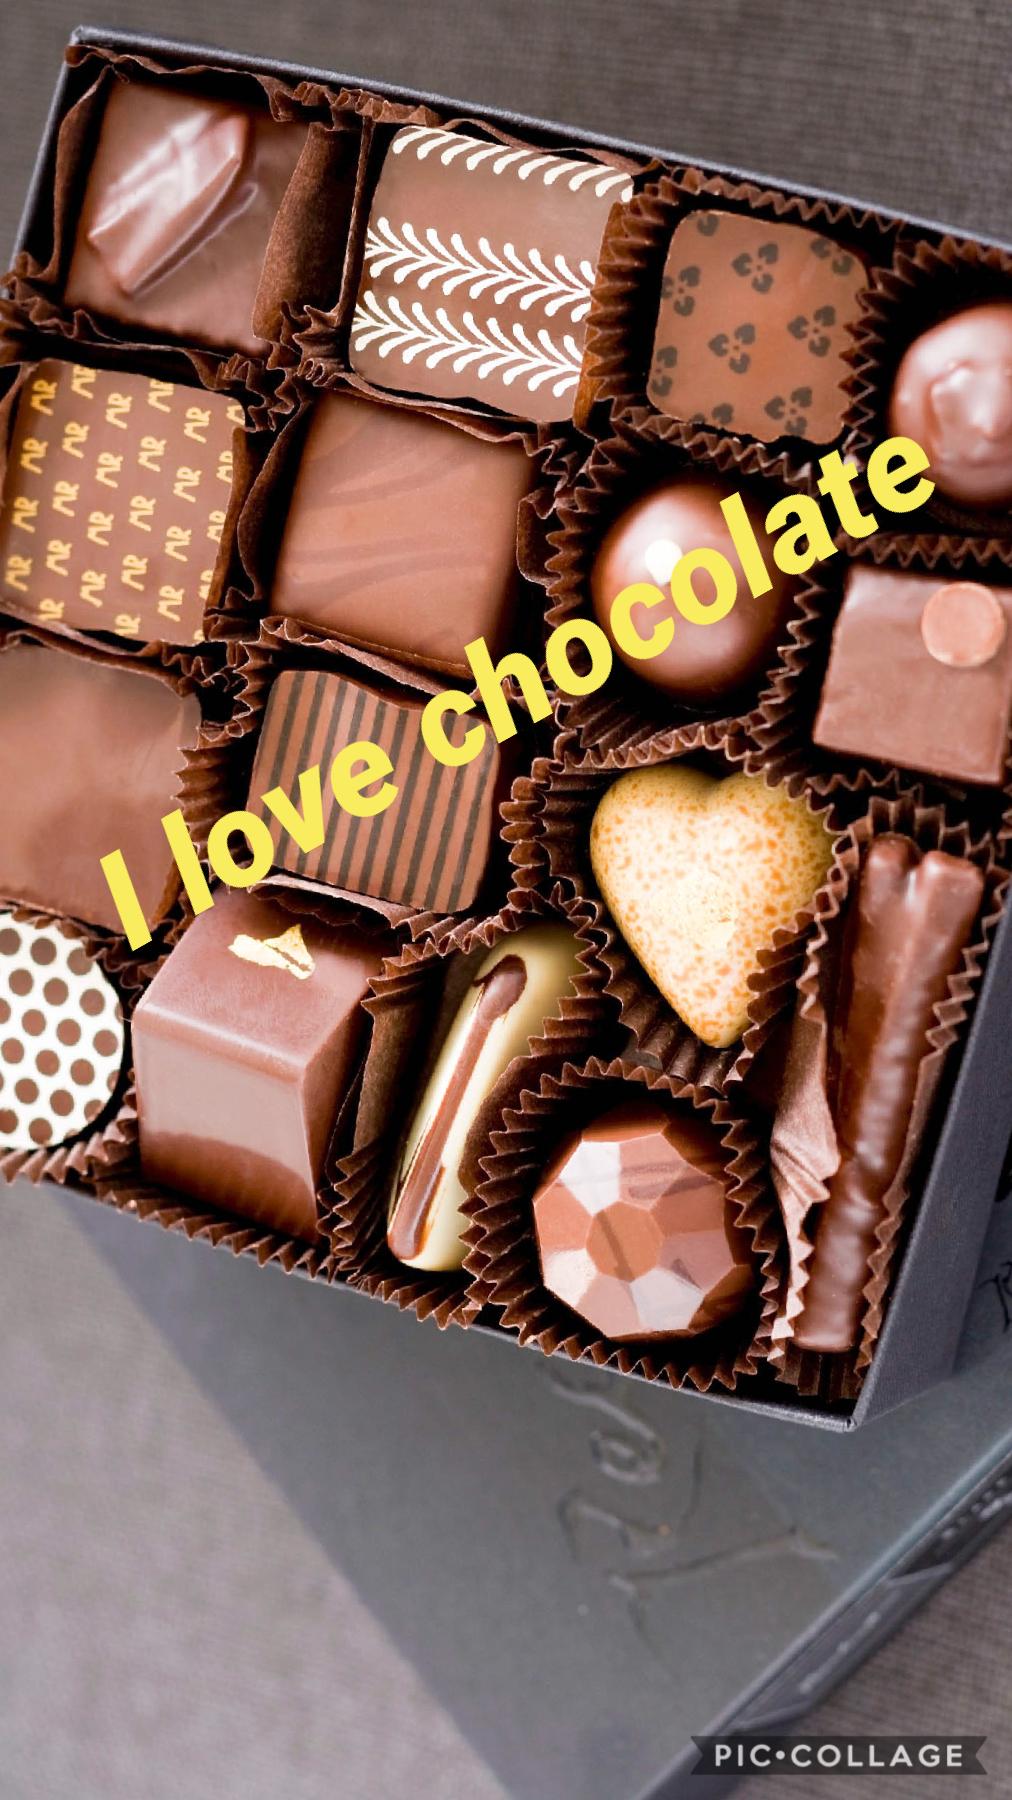 Do you like Chocolate